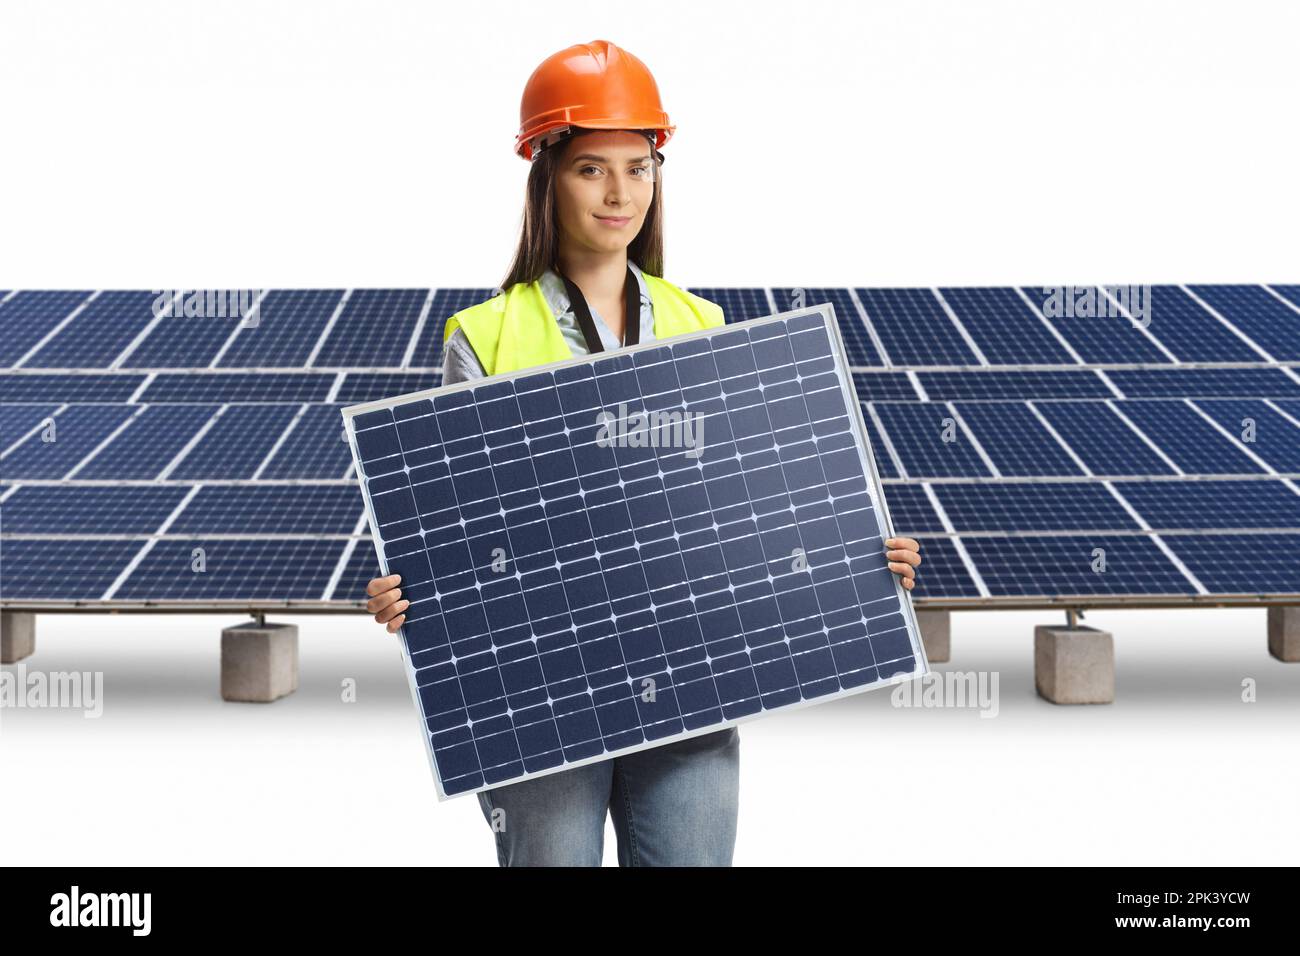 Jeune femme ingénieur tenant un panneau photovoltaïque dans une ferme solaire isolée sur fond blanc Banque D'Images